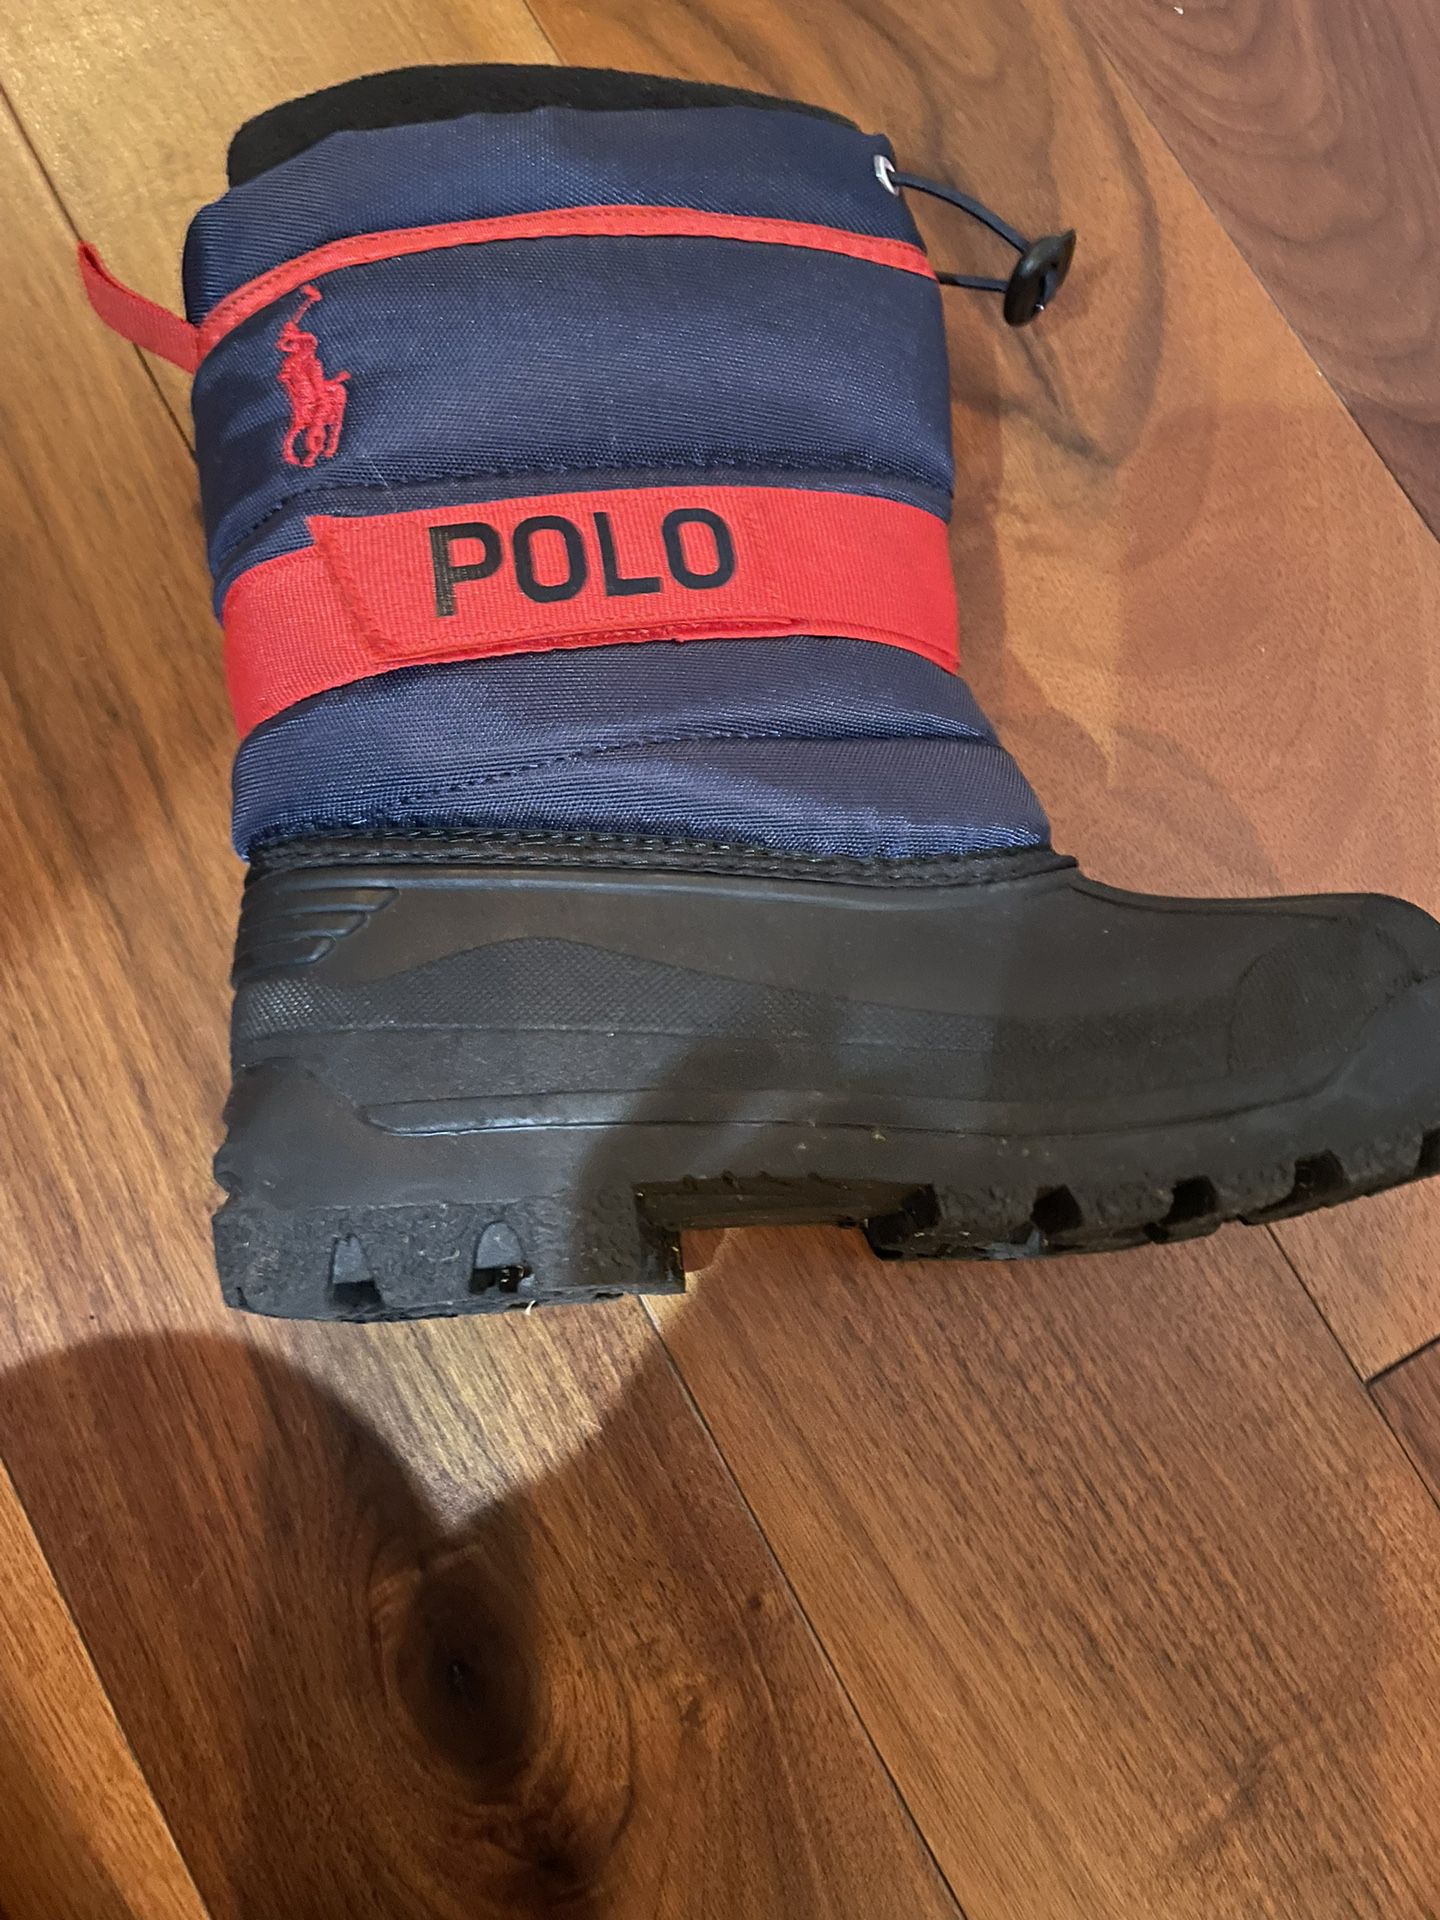 Polo Snow Boots For Boys